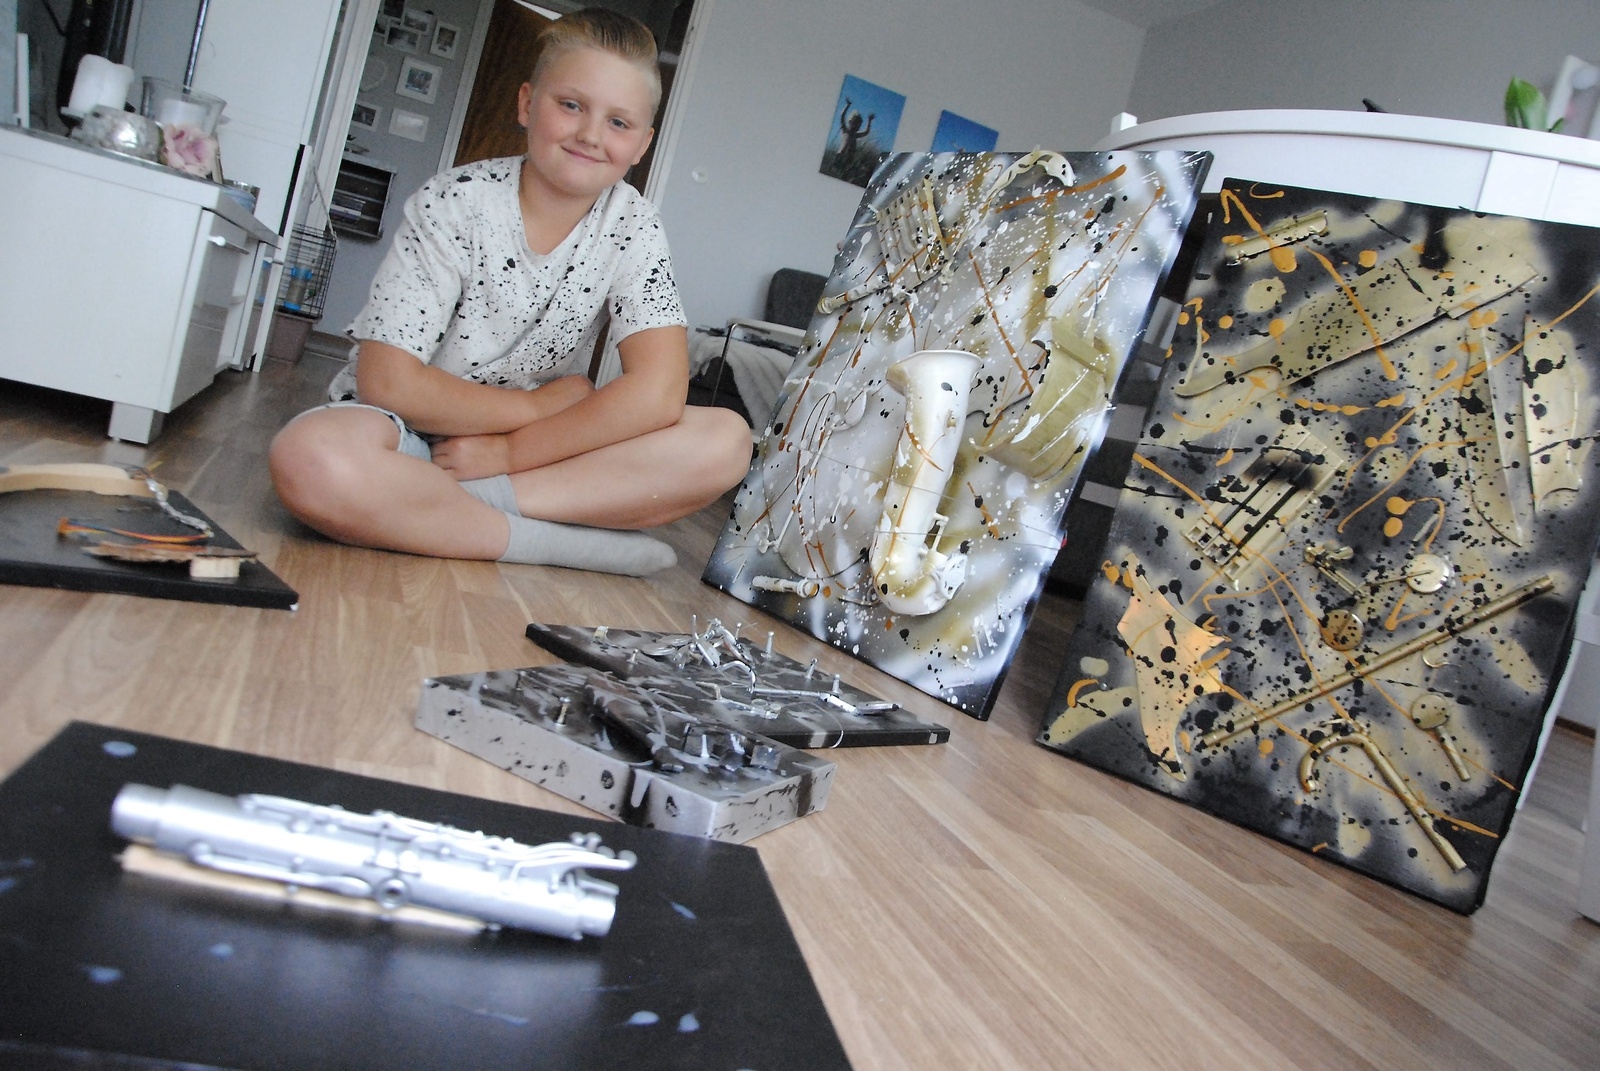 Tioårige Melvin Blixt i Bjärnum är stolt över sina tavlor, som han skapat av instrument som annars skulle ha slängts.
Foto: Kristina Höjendal